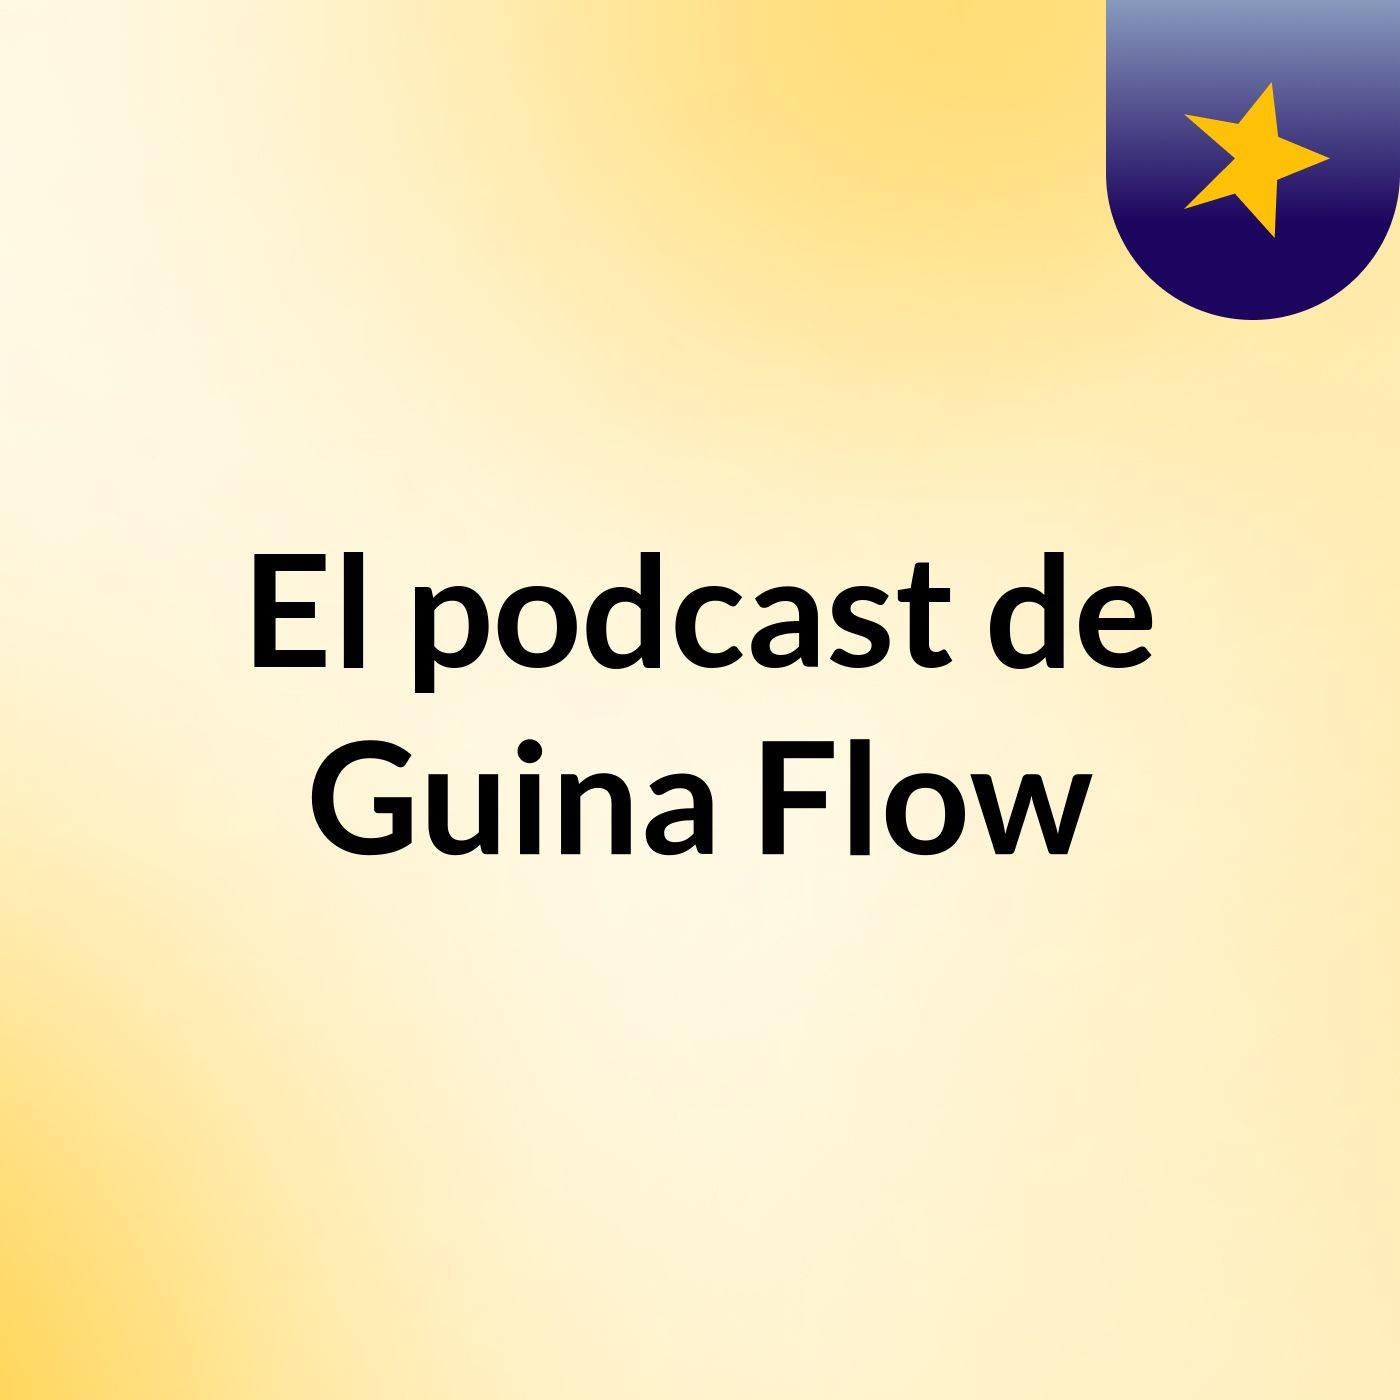 El podcast de Guina Flow